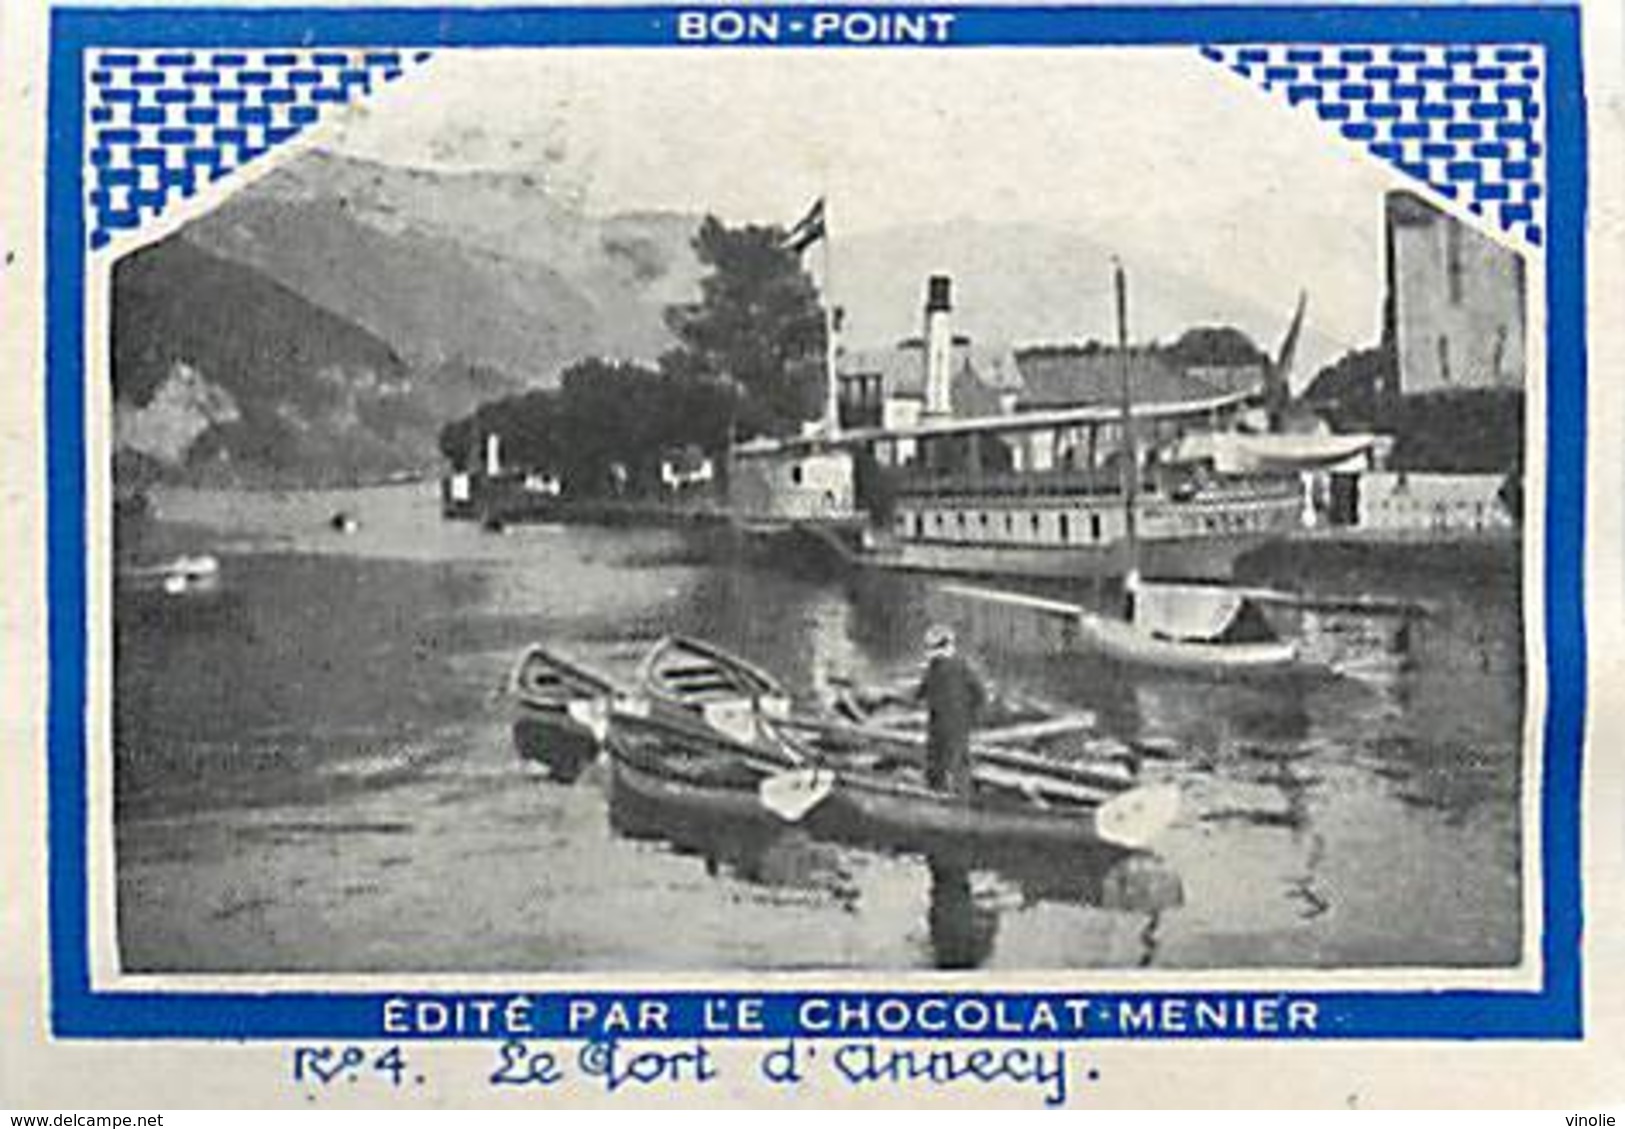 A-17. 5132 : BON-POINT EDITE PAR LE CHOCOLAT MENIER. LE PORT D ANNECY. HAUTE-SAVOIE. - Menier